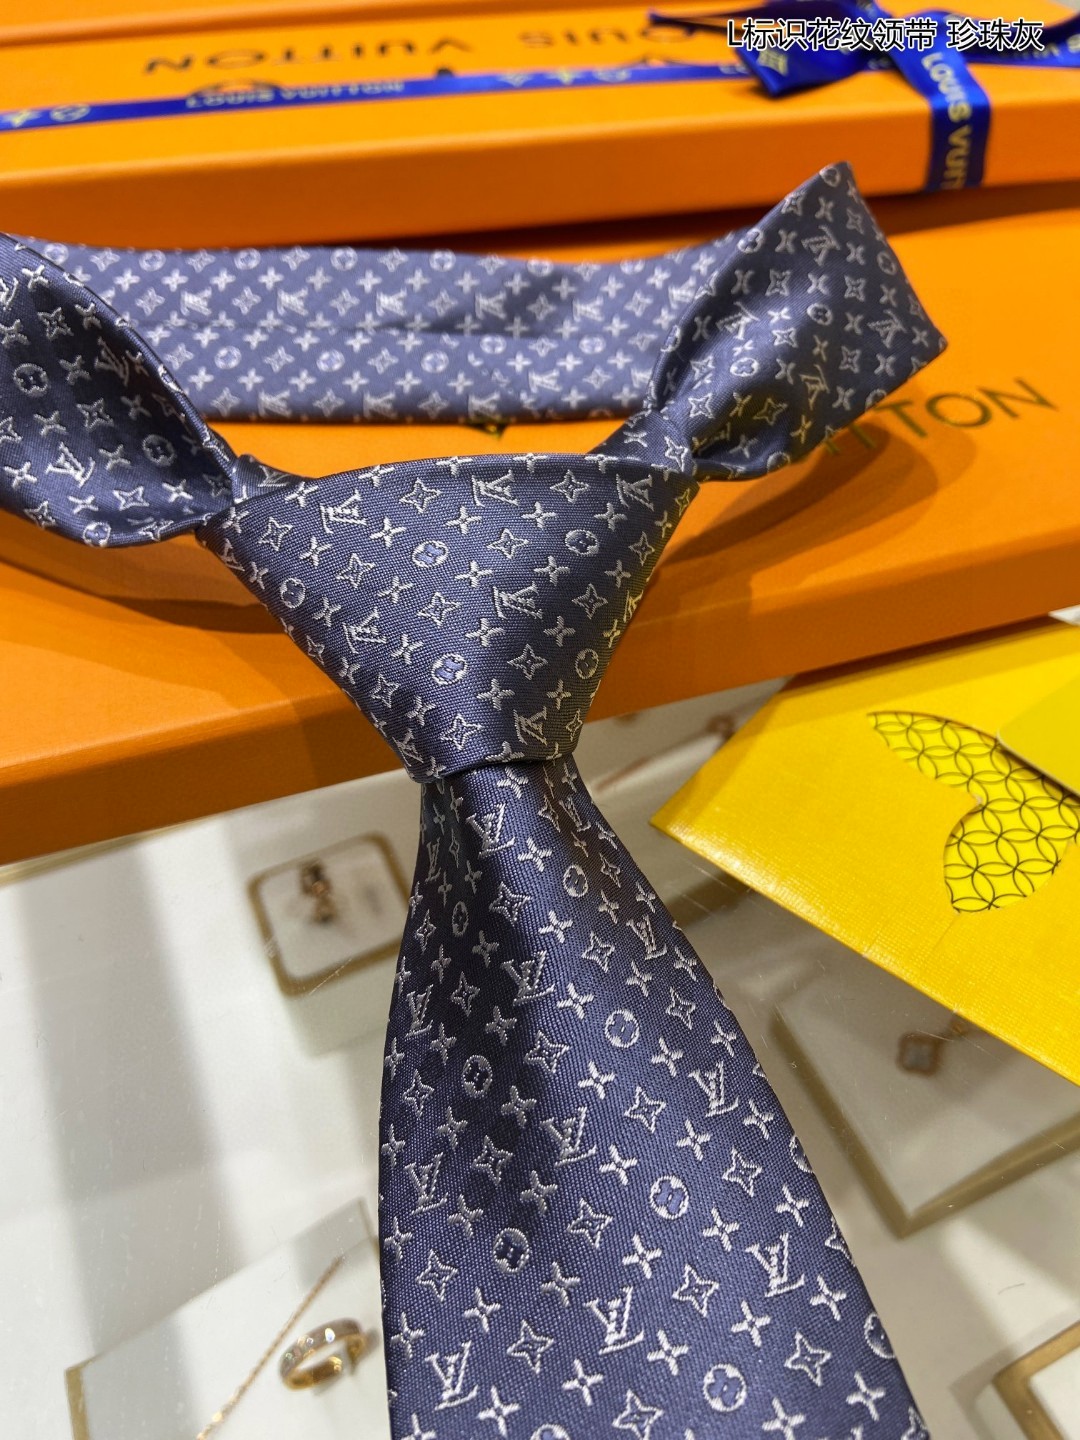 男士领带系列L标识花纹领带稀有MonogramClassic领带将经典路易威登风格与精细做工有机结合斑点